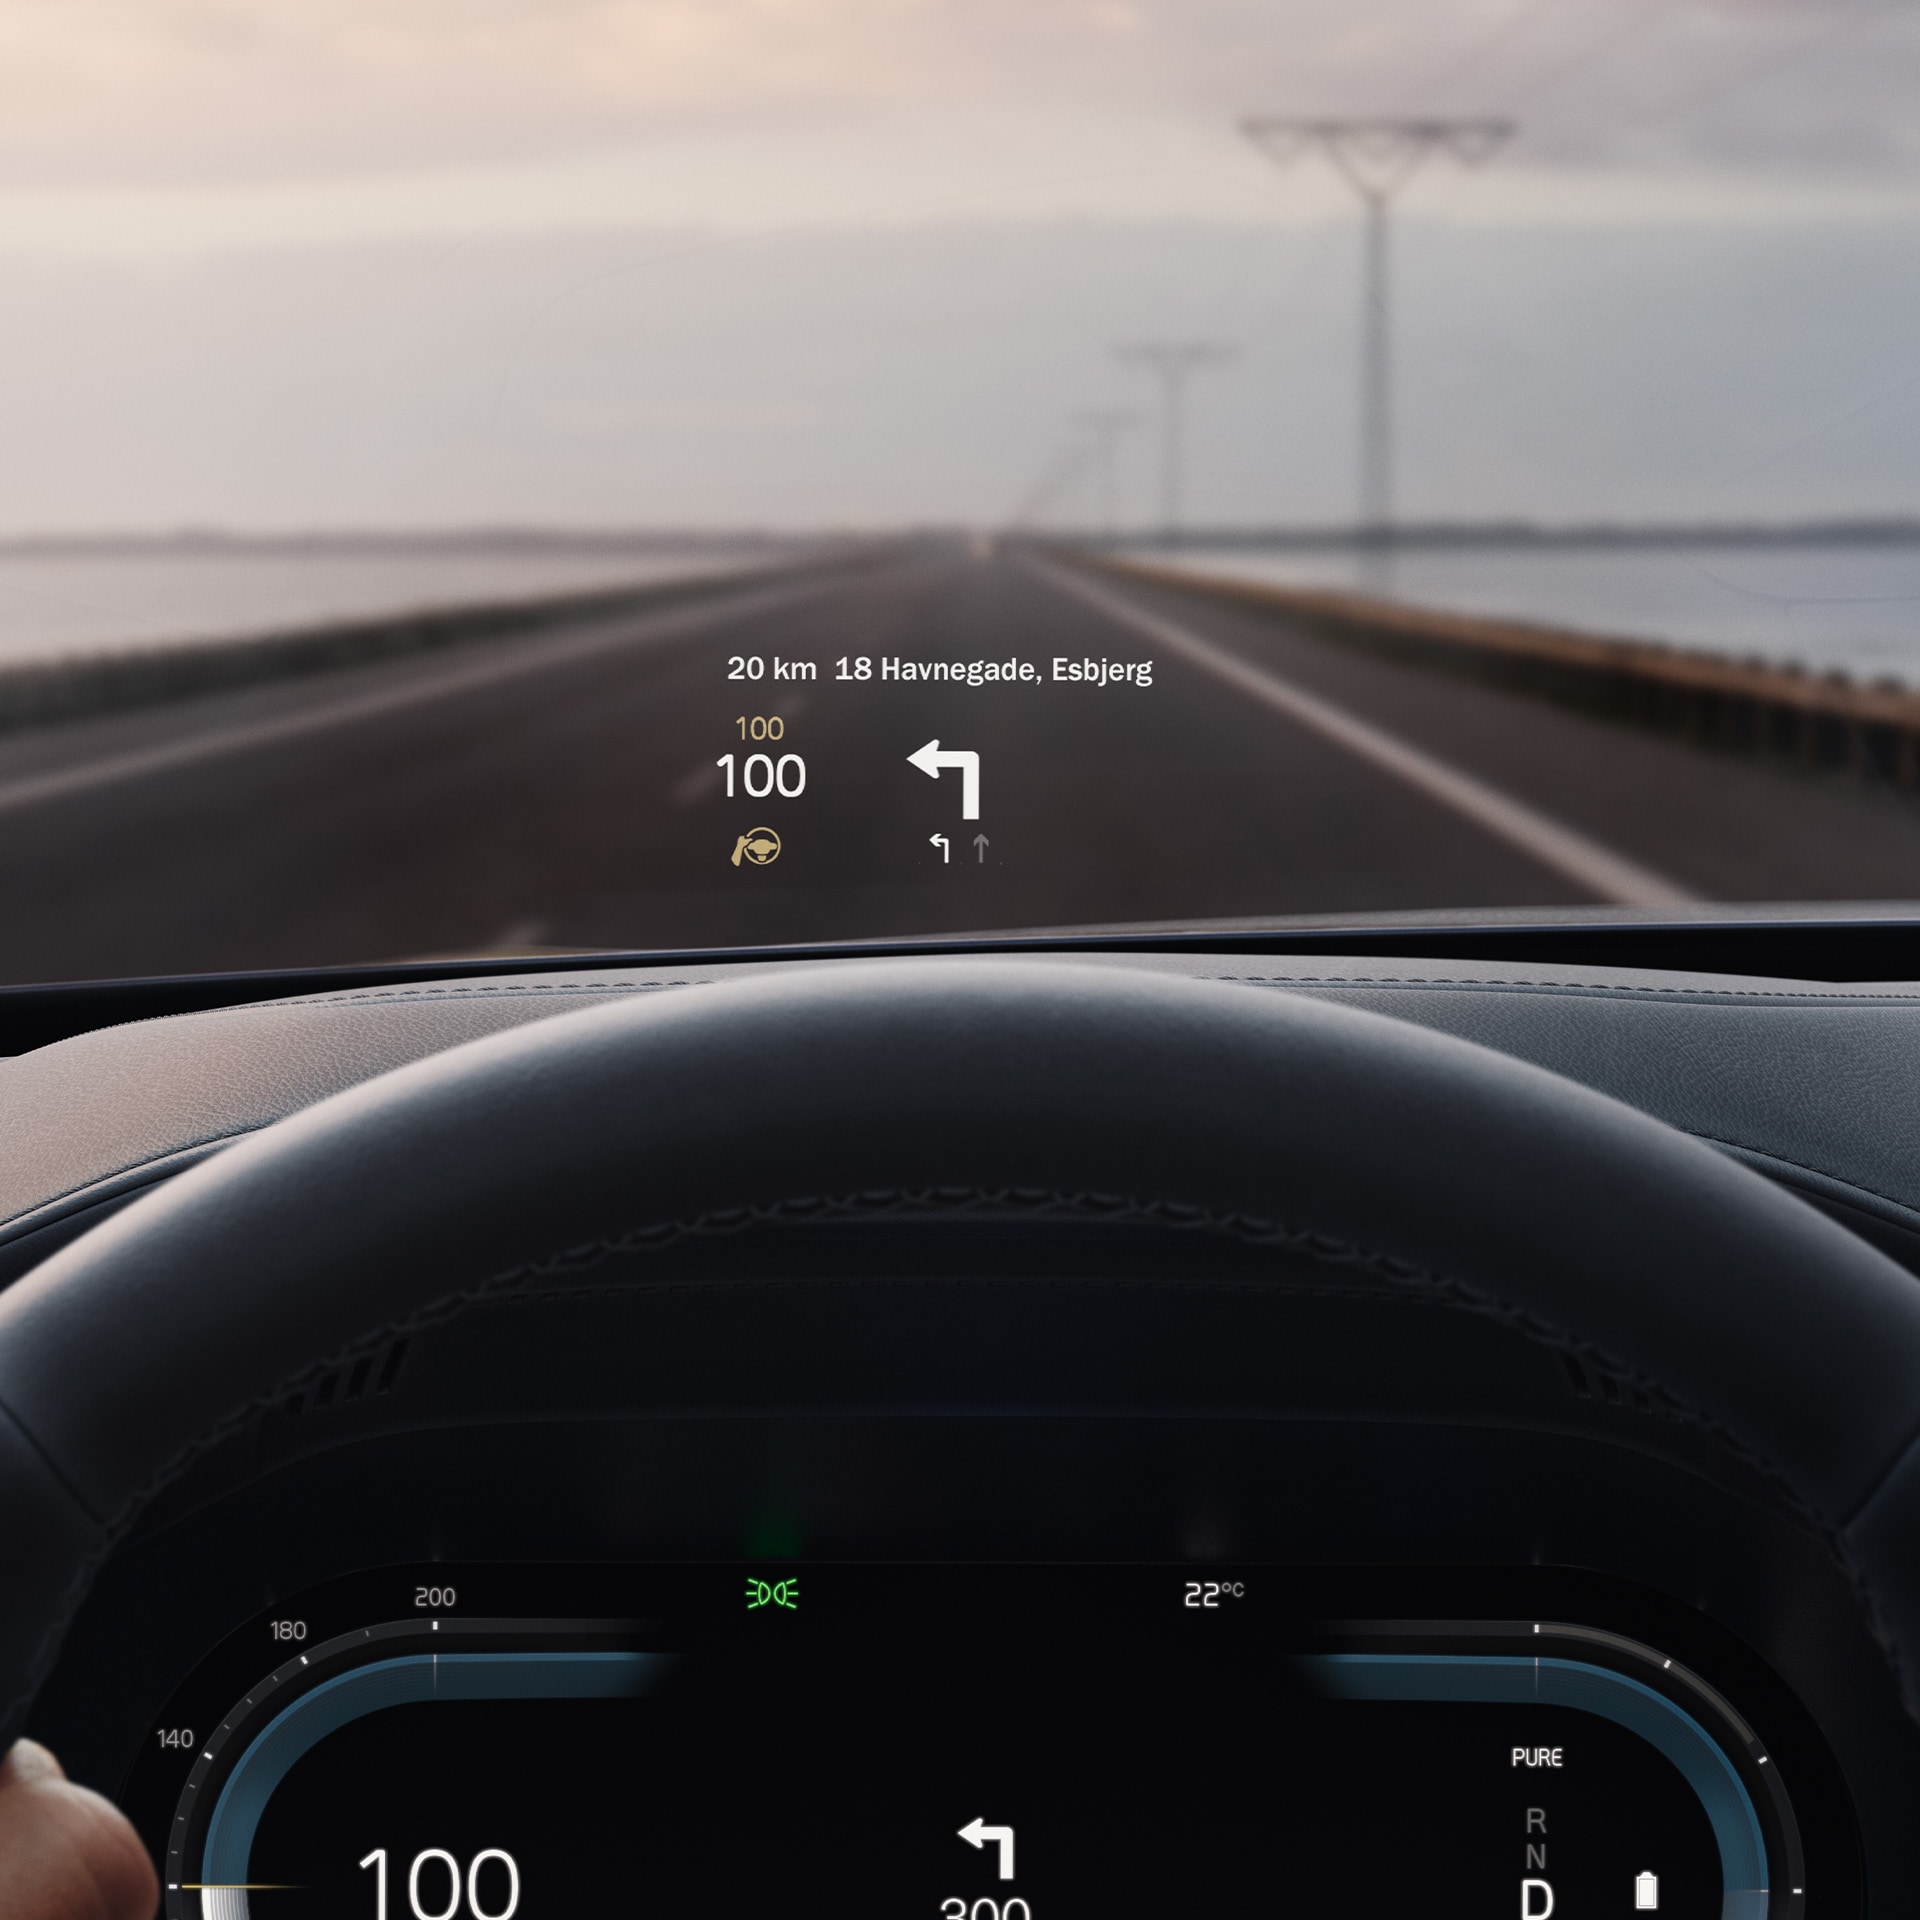 Інтер’єр автомобіля Volvo, на головному дисплеї показано швидкість руху, на лобовому склі відображається навігаційна система.